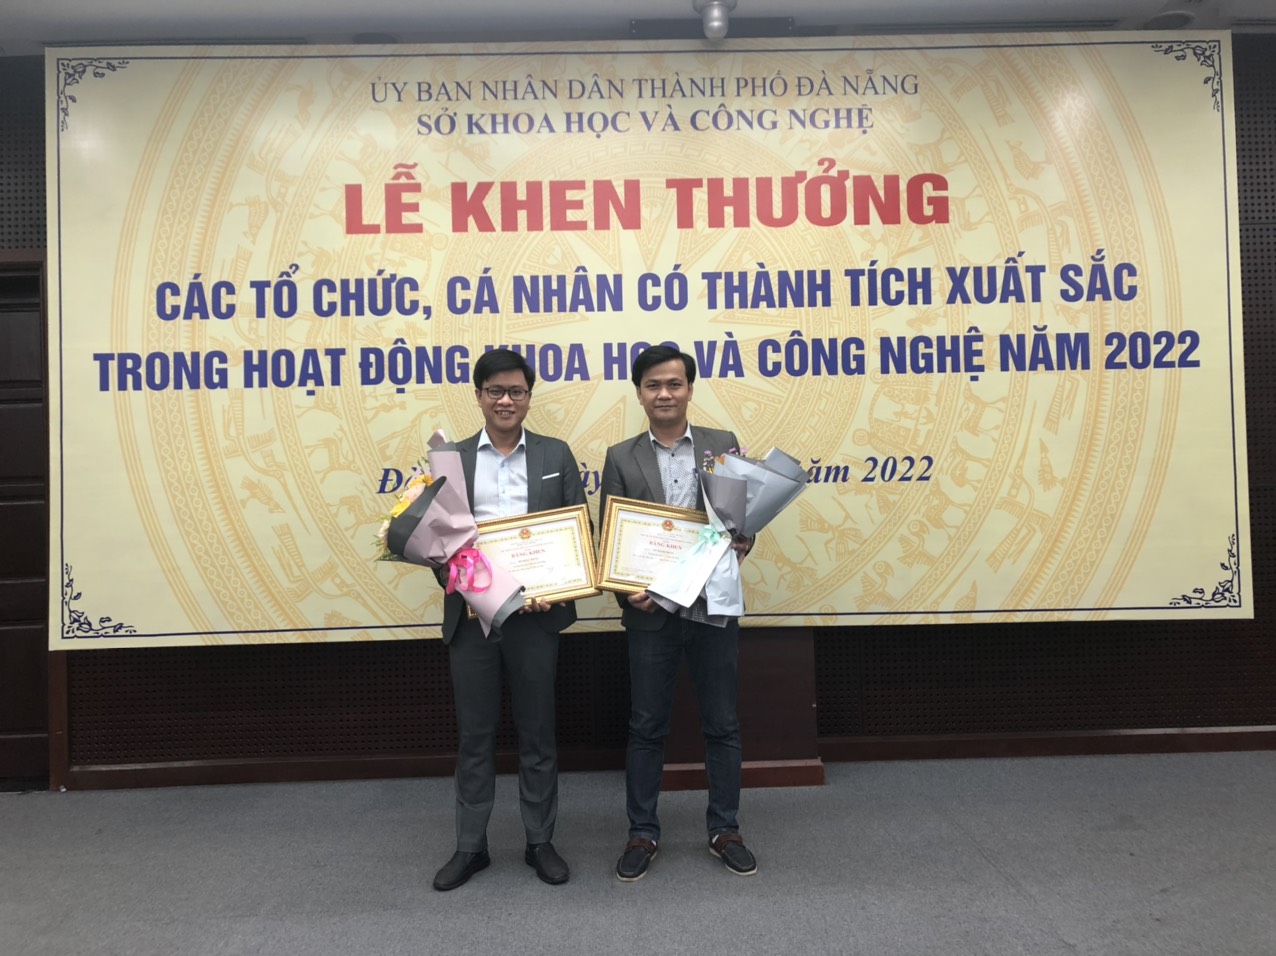 [𝐂𝐎𝐍𝐆𝐑𝐀𝐓𝐔𝐋𝐀𝐓𝐈𝐎𝐍𝐒]  Chúc mừng 02 giảng viên DAU được UBND TP. Đà Nẵng và Sở KHCN Đà Nằng khen thưởng trong hoạt động KHCN của thành phố năm 2022